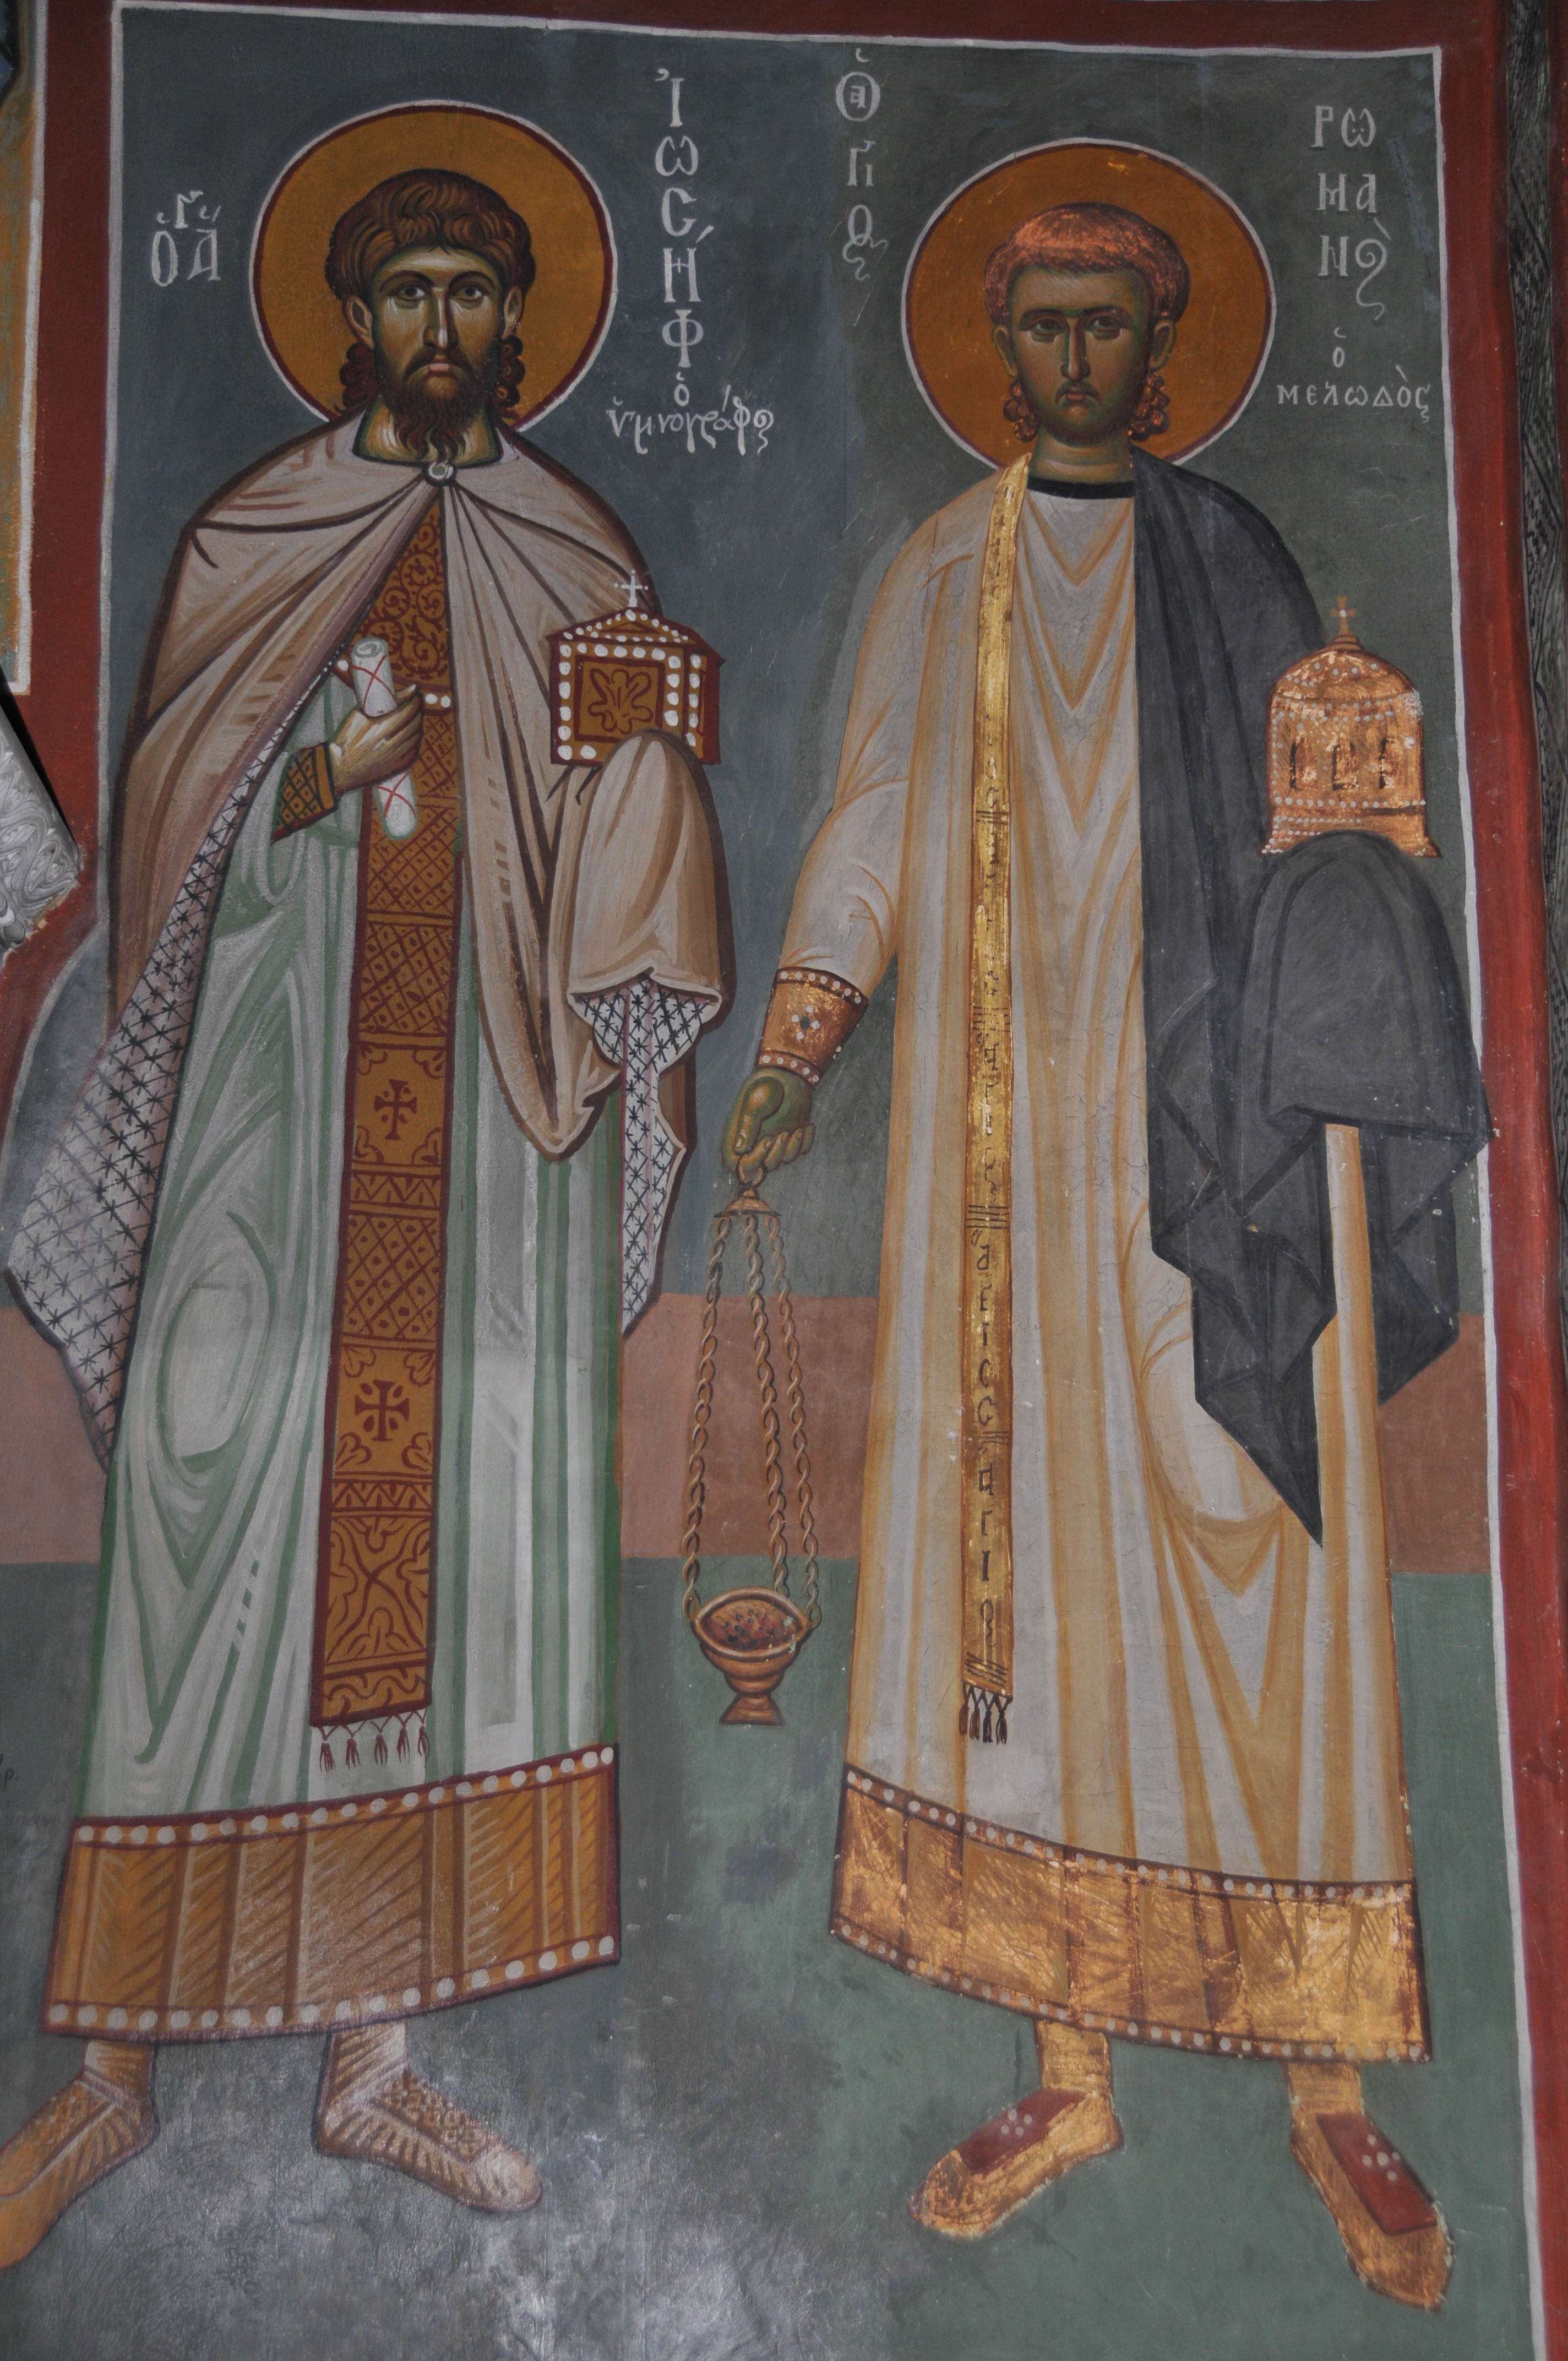 Αποτέλεσμα εικόνας για αγιος ρωμανος μελωδος τοιχογραφια